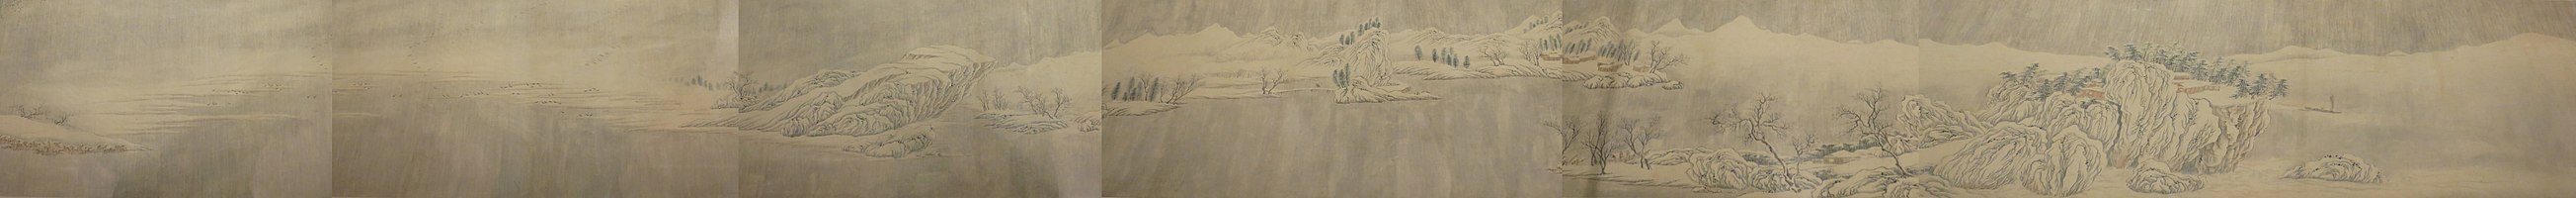 16e-eeuwse kopie op handrol van Opklaring na een sneeuwbui langs de rivier, gewassen inkt en kleur op papier, collectie Honolulu Museum of Art.[5] Het origineel wordt aan Wang Wei toegeschreven.